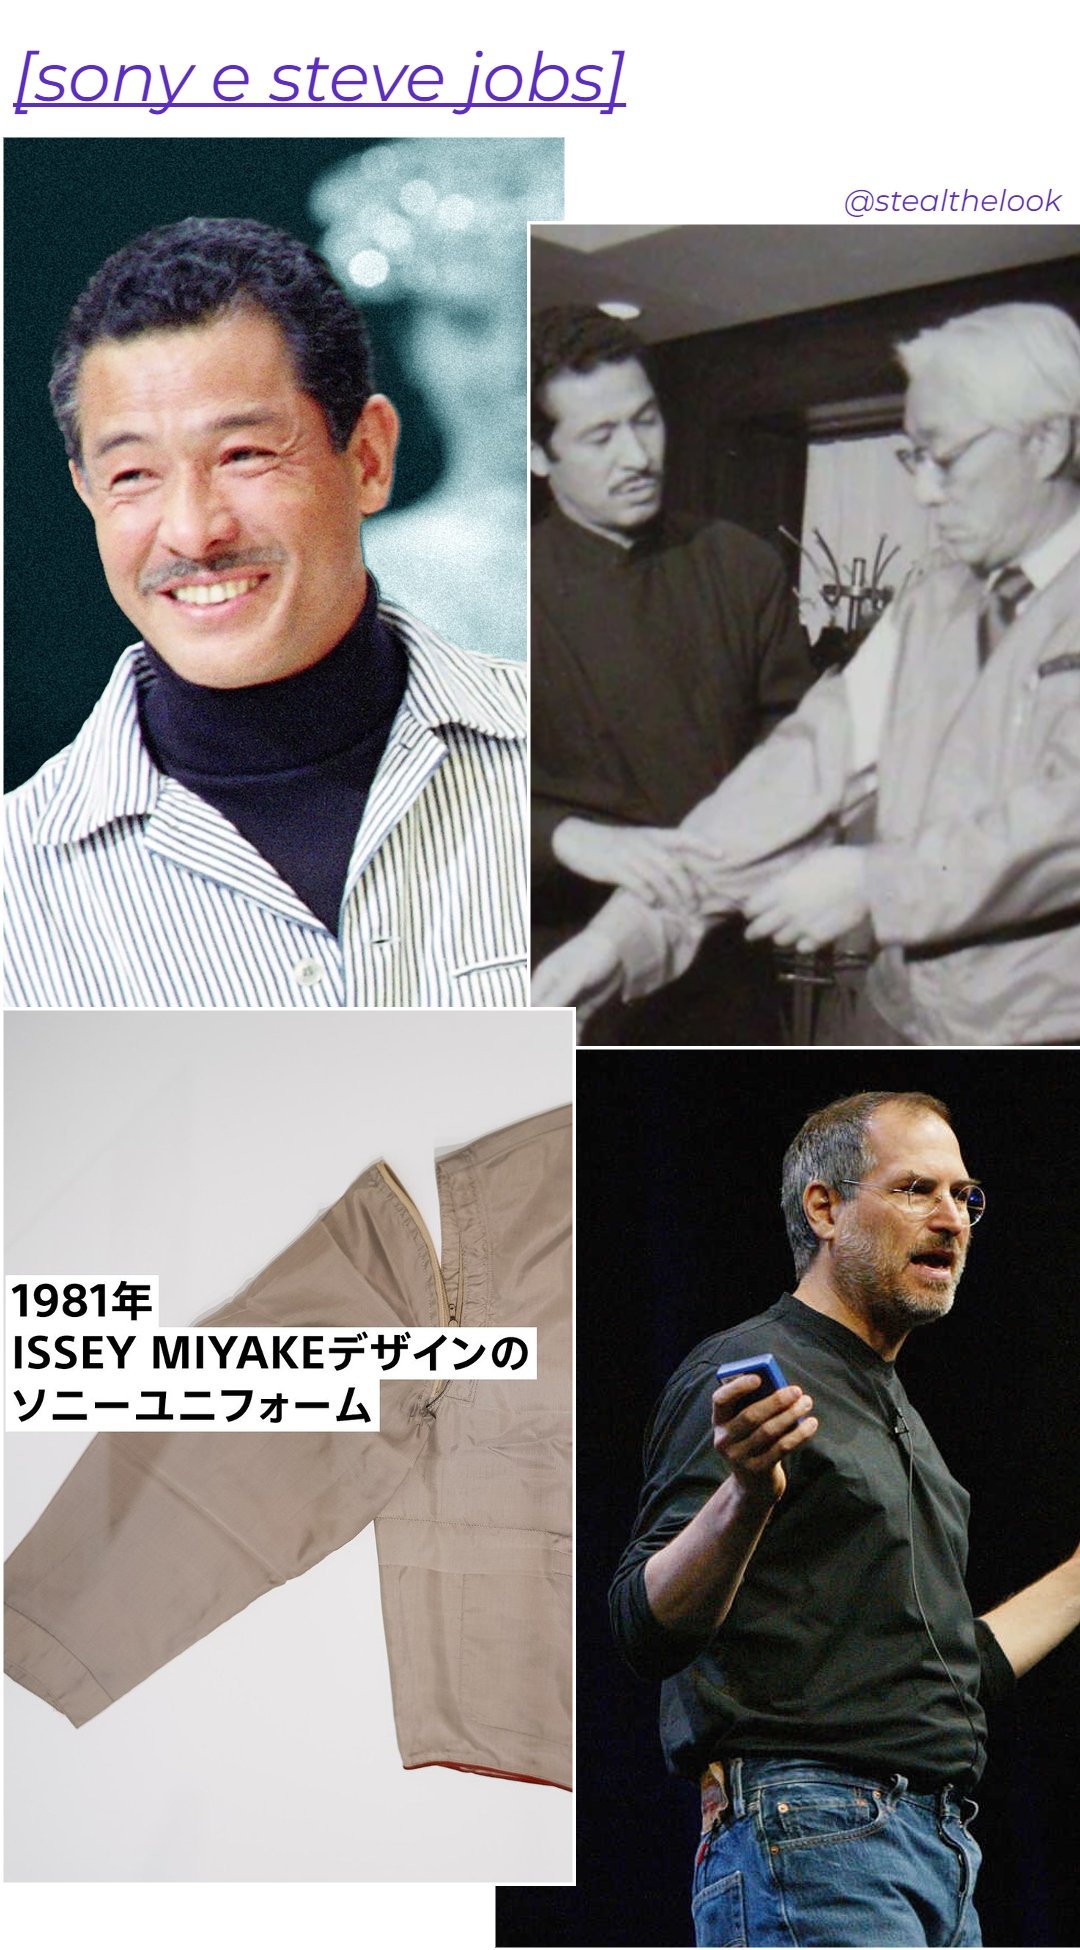 Issey Miyake, Akio Morita e Steve Jobs - roupas diversas - asiáticos na moda - inverno - colagem de imagens - https://stealthelook.com.br